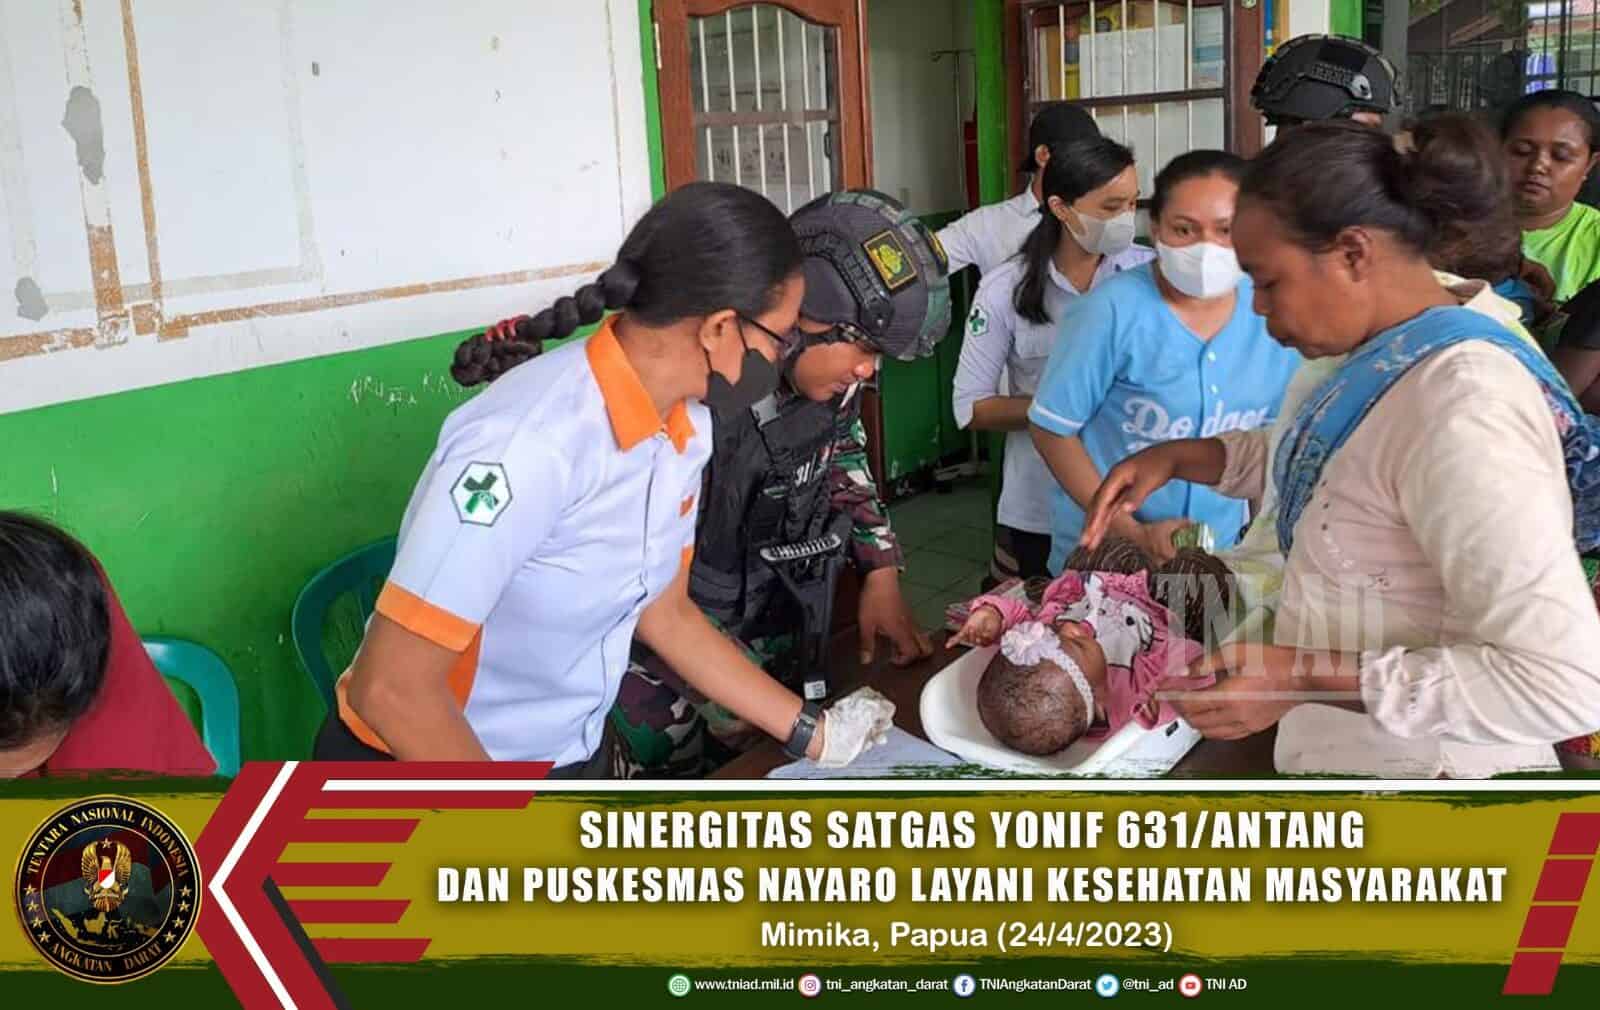 Sinergi Satgas Yonif R 631/Atg Dan Puskesmas Nayaro Dalam Melayani Kesehatan Masyarakat